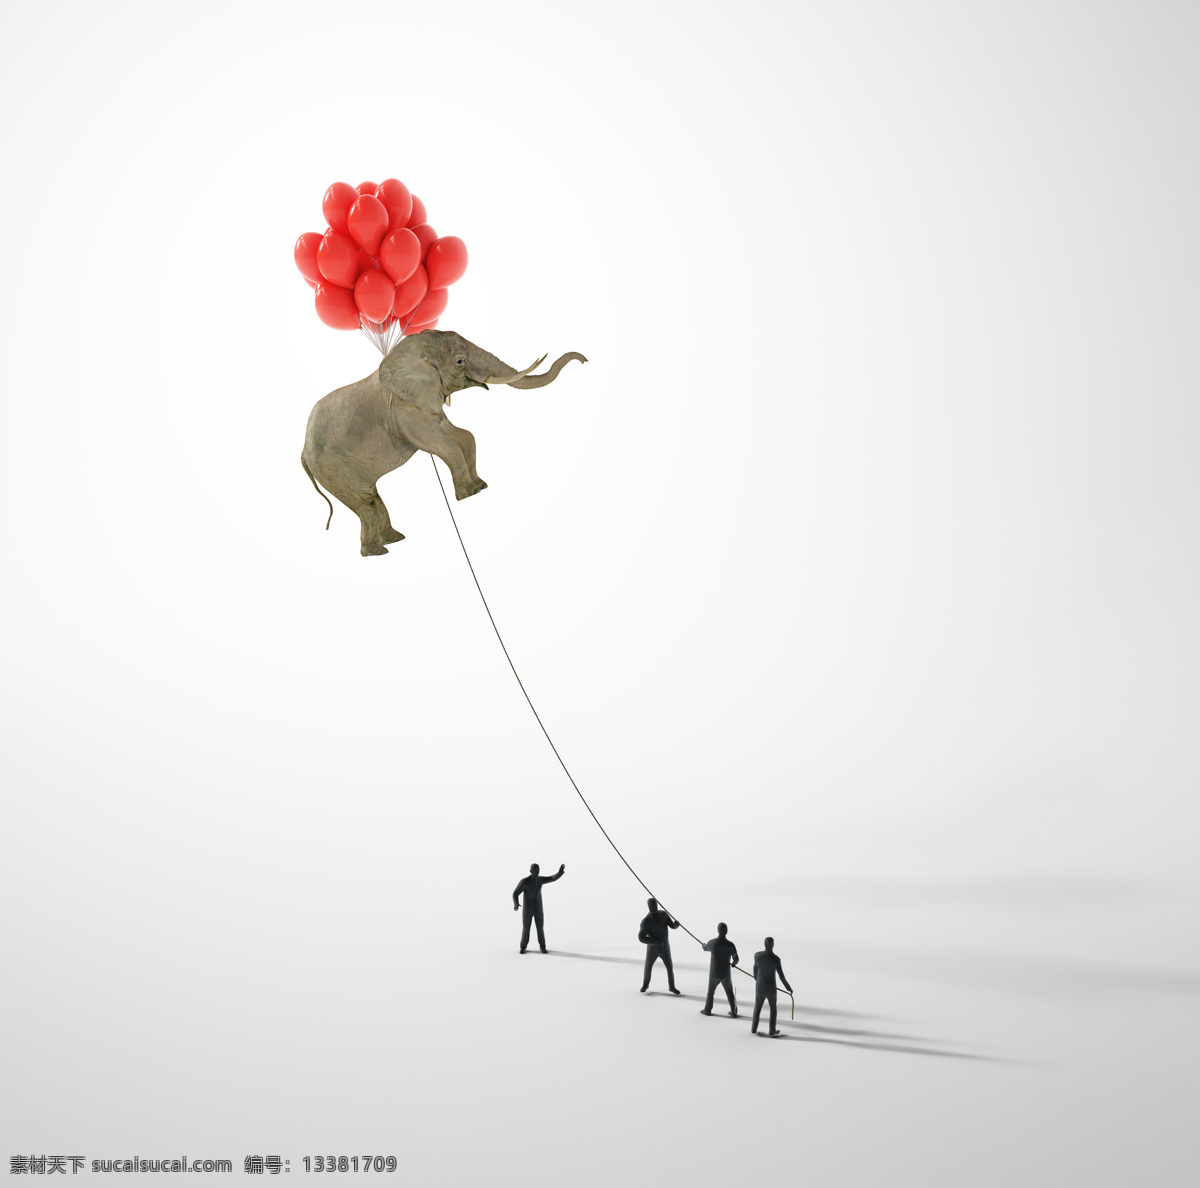 气球 飞 上天 空 大象 创意 创意图片 其他类别 生活百科